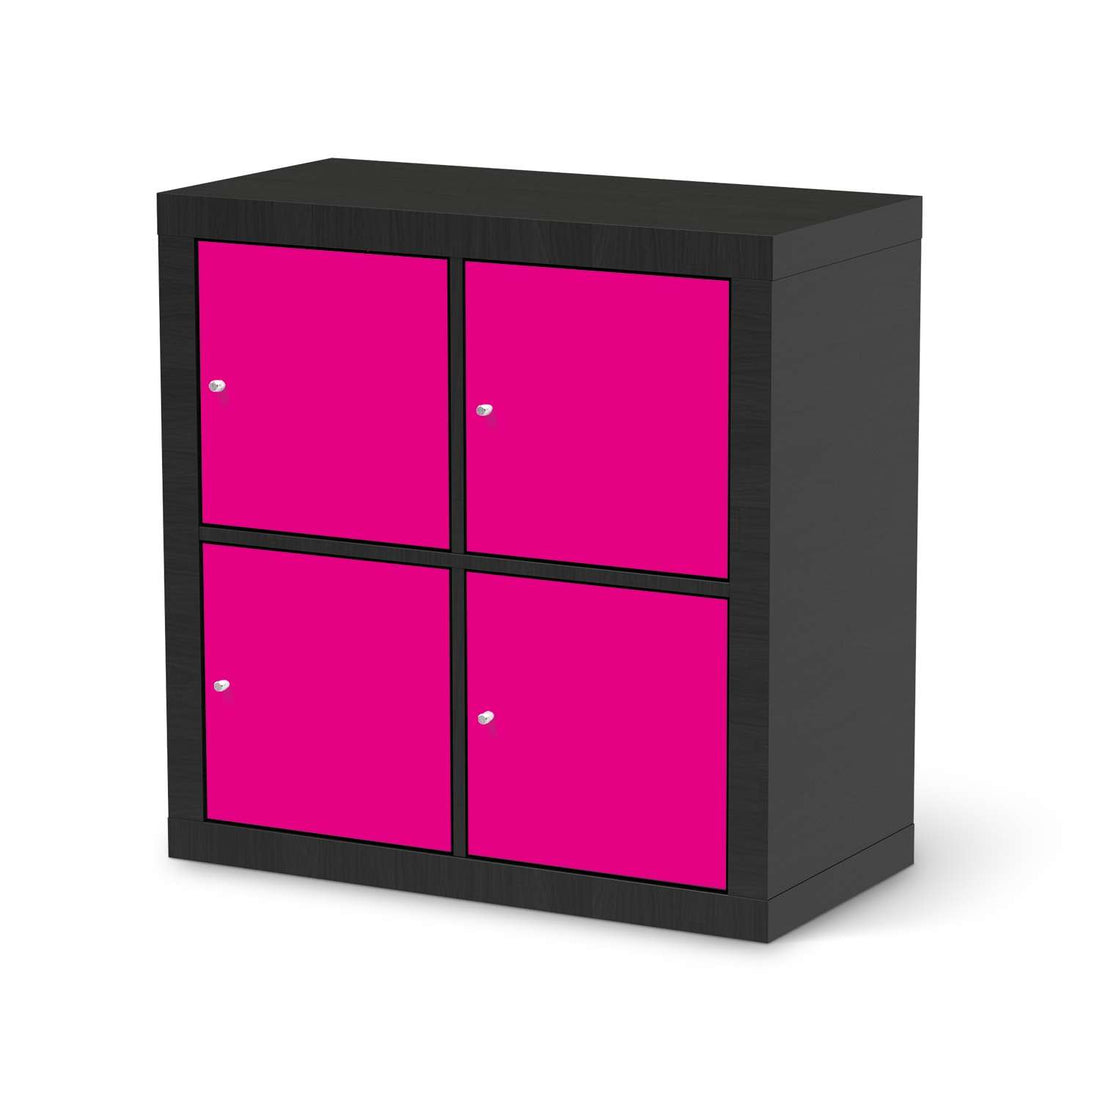 Möbelfolie Pink Dark - IKEA Expedit Regal 4 Türen - schwarz